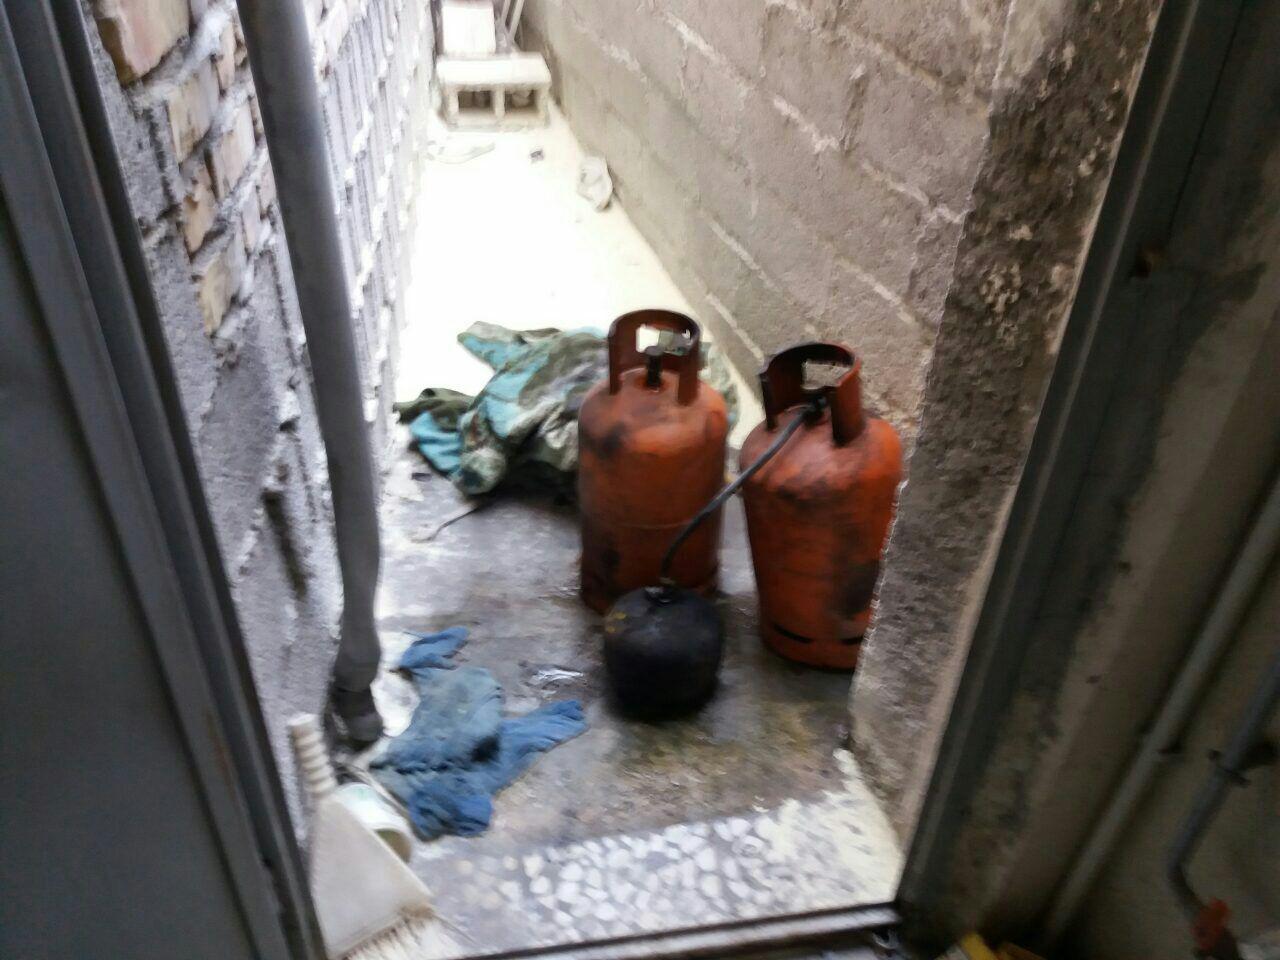 انفجار گاز پيك نيك در منزلي در رشت، يك مصدوم بر جا گذاشت